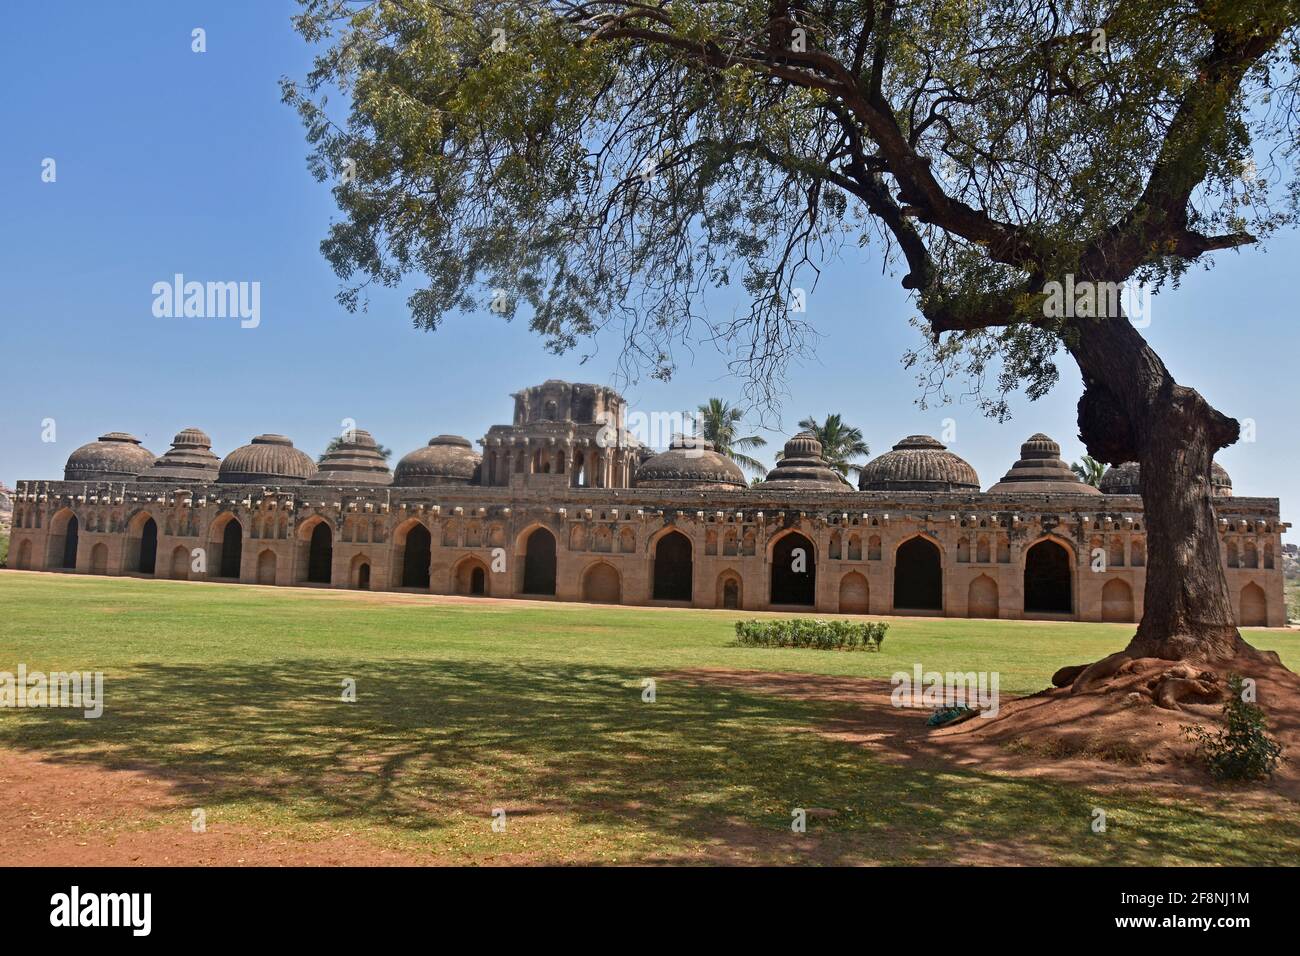 Antiche rovine delle scuderie reali degli Elefanti ad Hampi dal xiv secolo regno di Vijayanagara l'antica città di Vijayanagara, Hampi, Karnataka, India Foto Stock